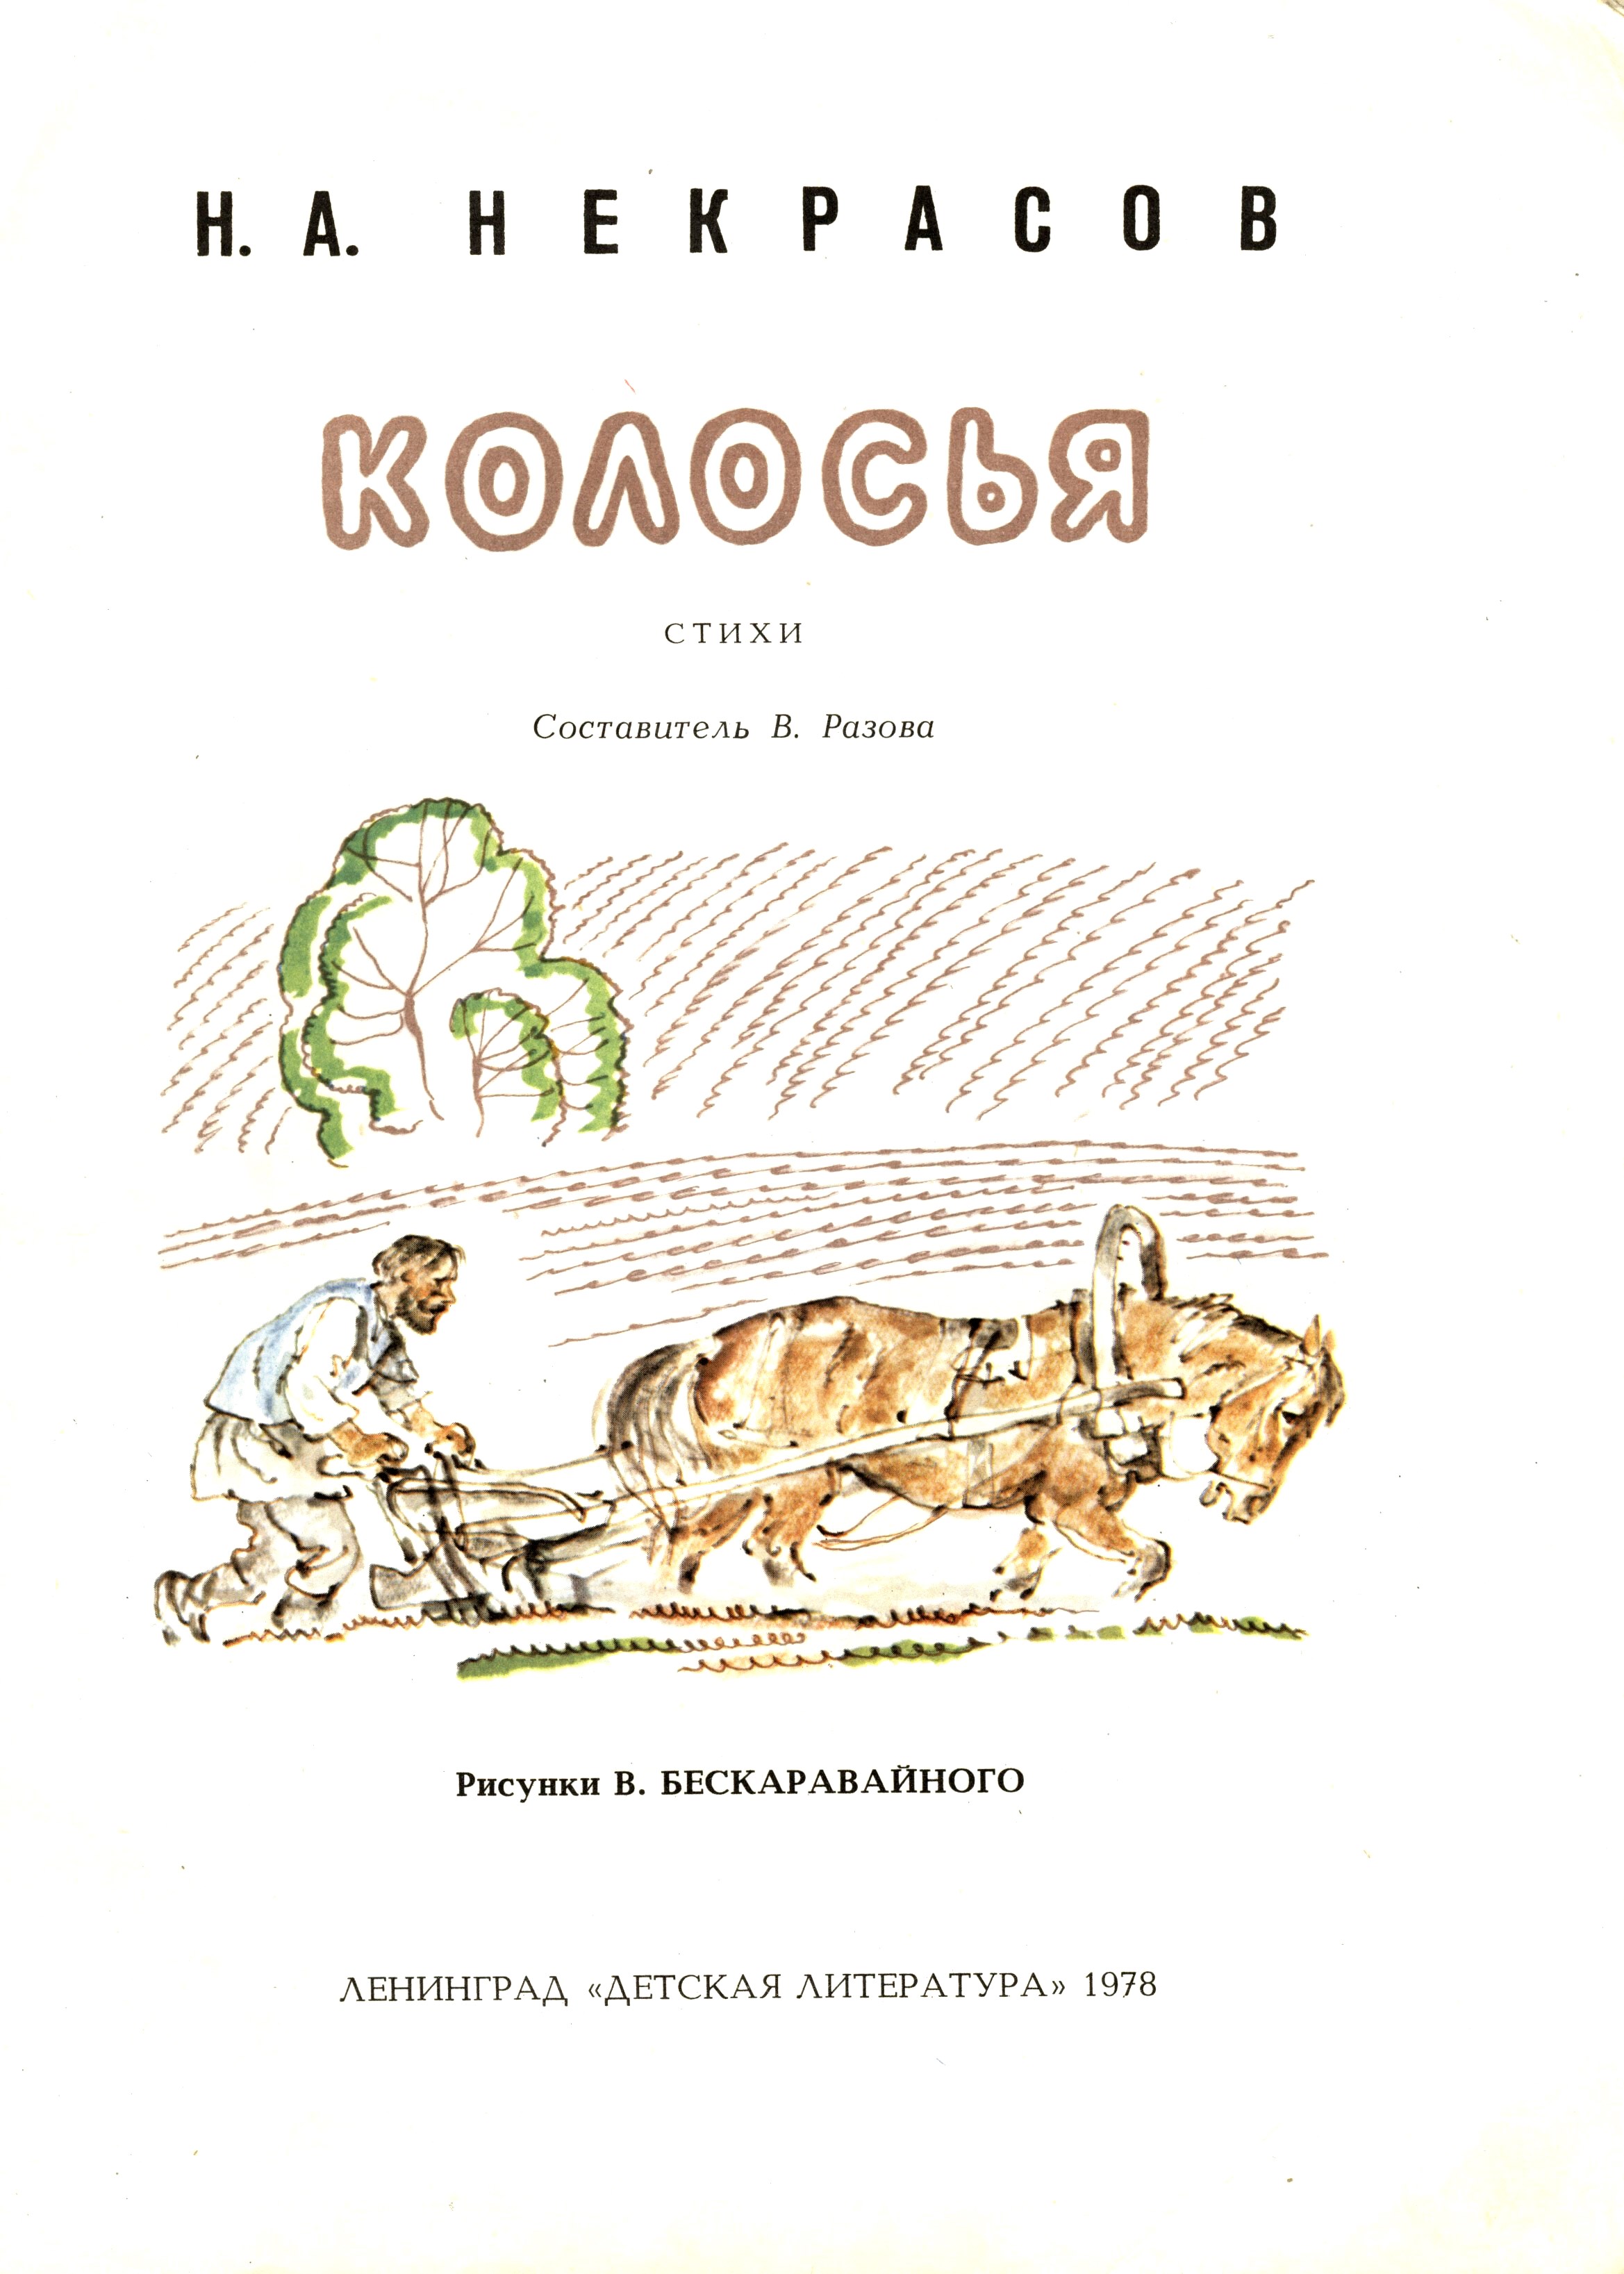 Н. А. Некрасов. "Колосья". Иллюстрации В. Бескаравайного.